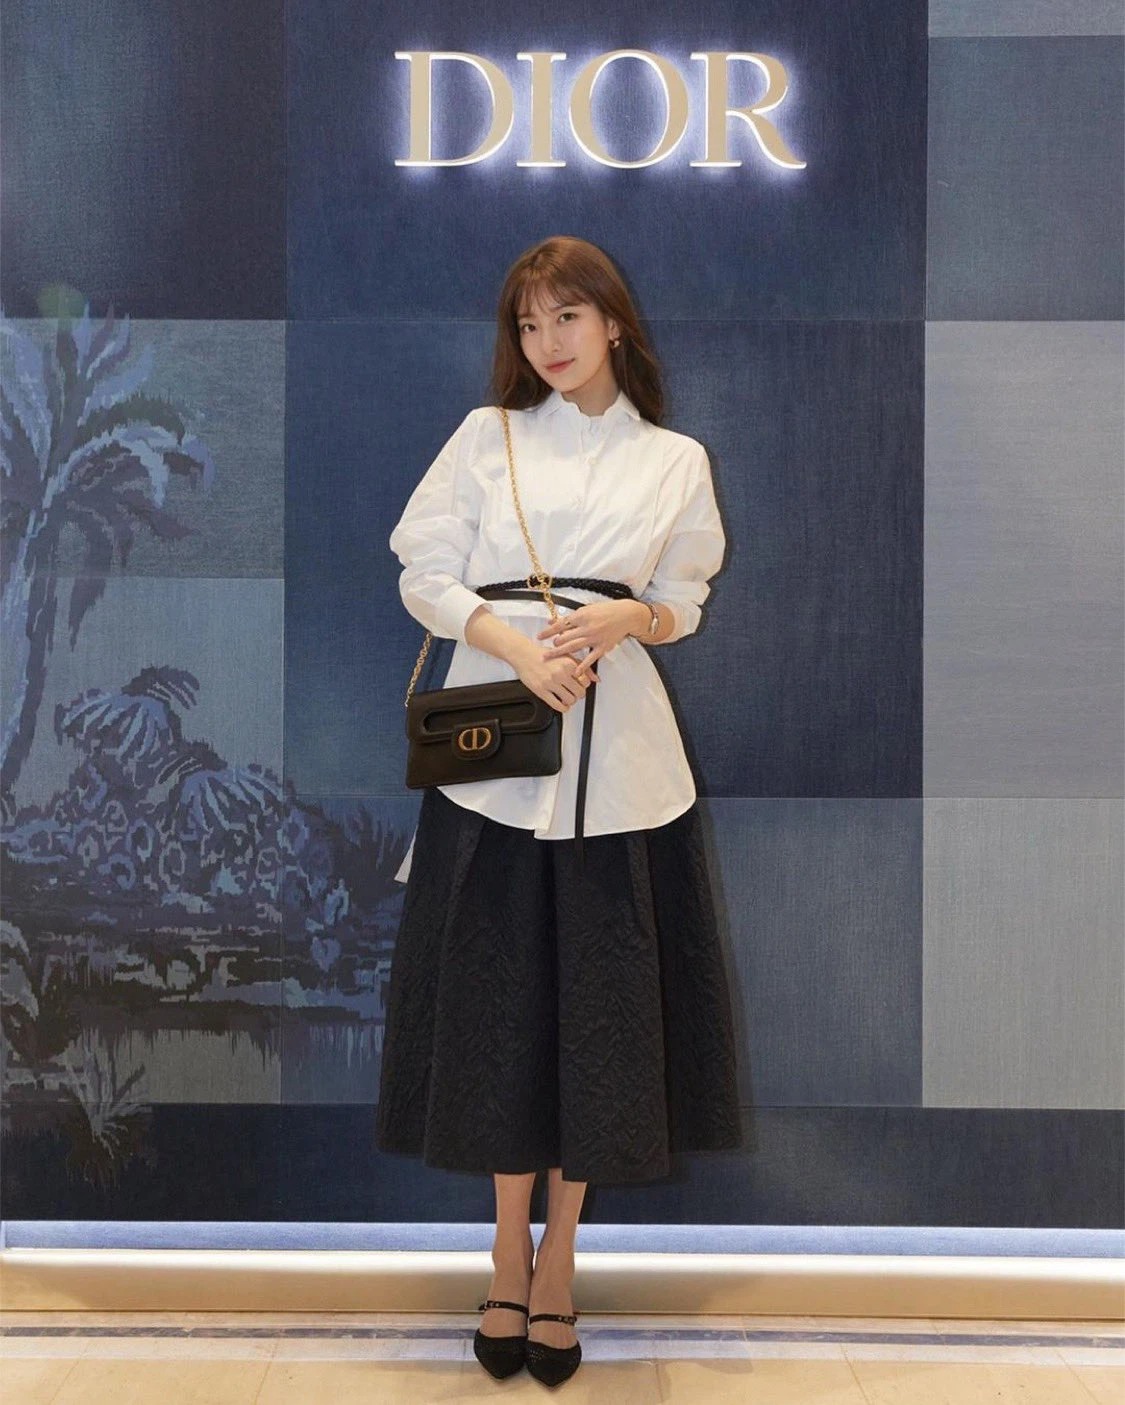 Ngày 26/2, Suzy xuất hiện tại cửa hàng Dior ở Hàn Quốc trong một trang phục đậm chất cổ điển. Cô diện áo sơ mi trắng oversize, đi kèm chân váy midi và một đôi Mary Janes. Sau bao nhiêu năm bước chân vào nghề, cô vẫn xinh đẹp như ngày nào.